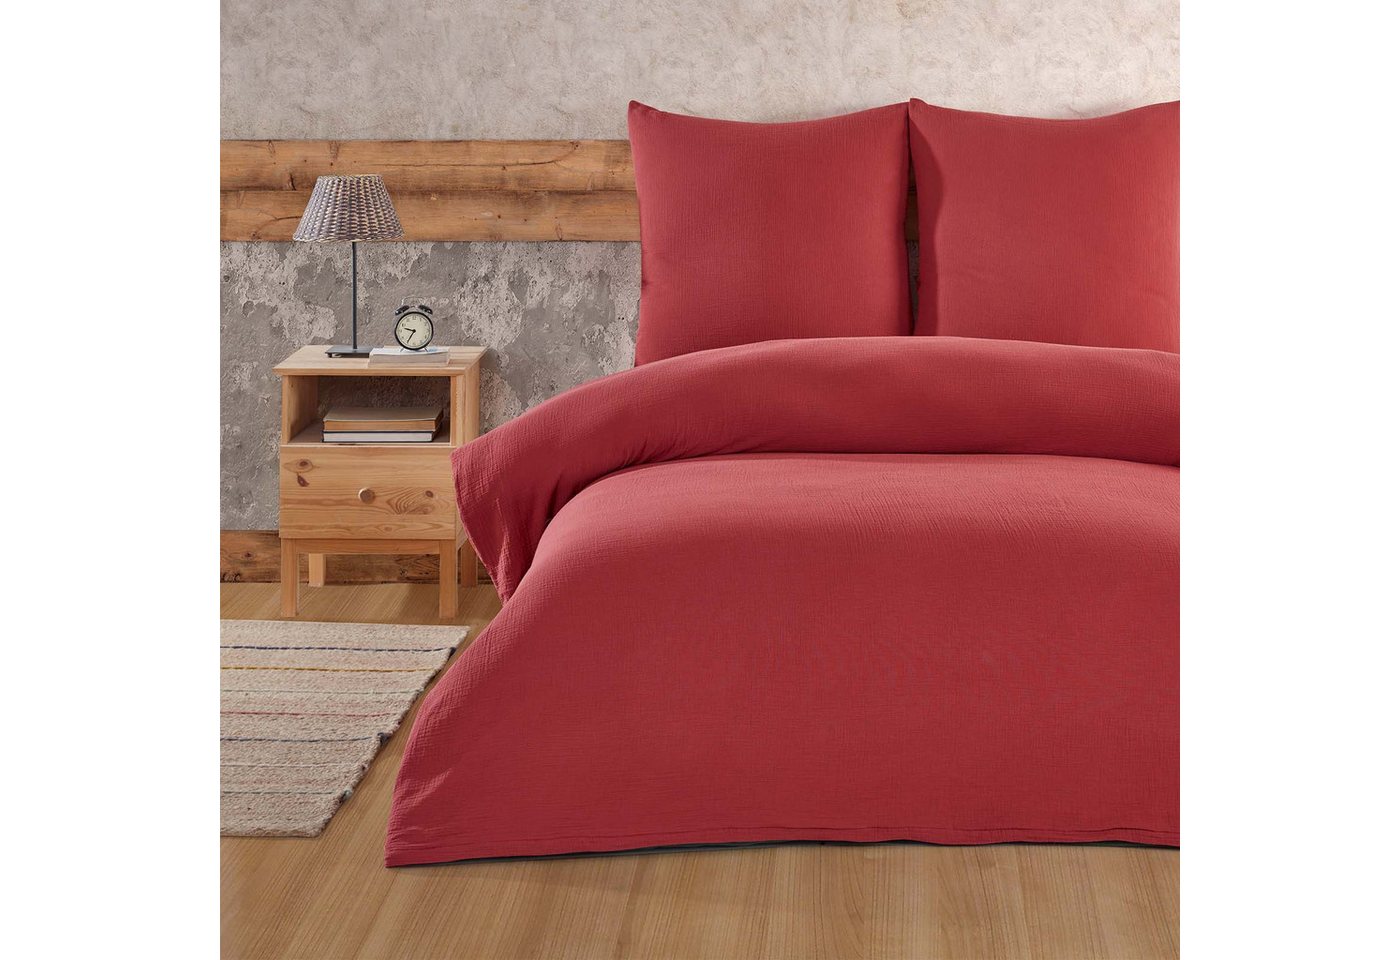 Bettwäsche Luxury, Buymax, Musselin 100% Baumwolle, 2 teilig, 155x220 cm, Bettbezug Set, Uni einfarbig, mit Reißverschluss, Rot von Buymax